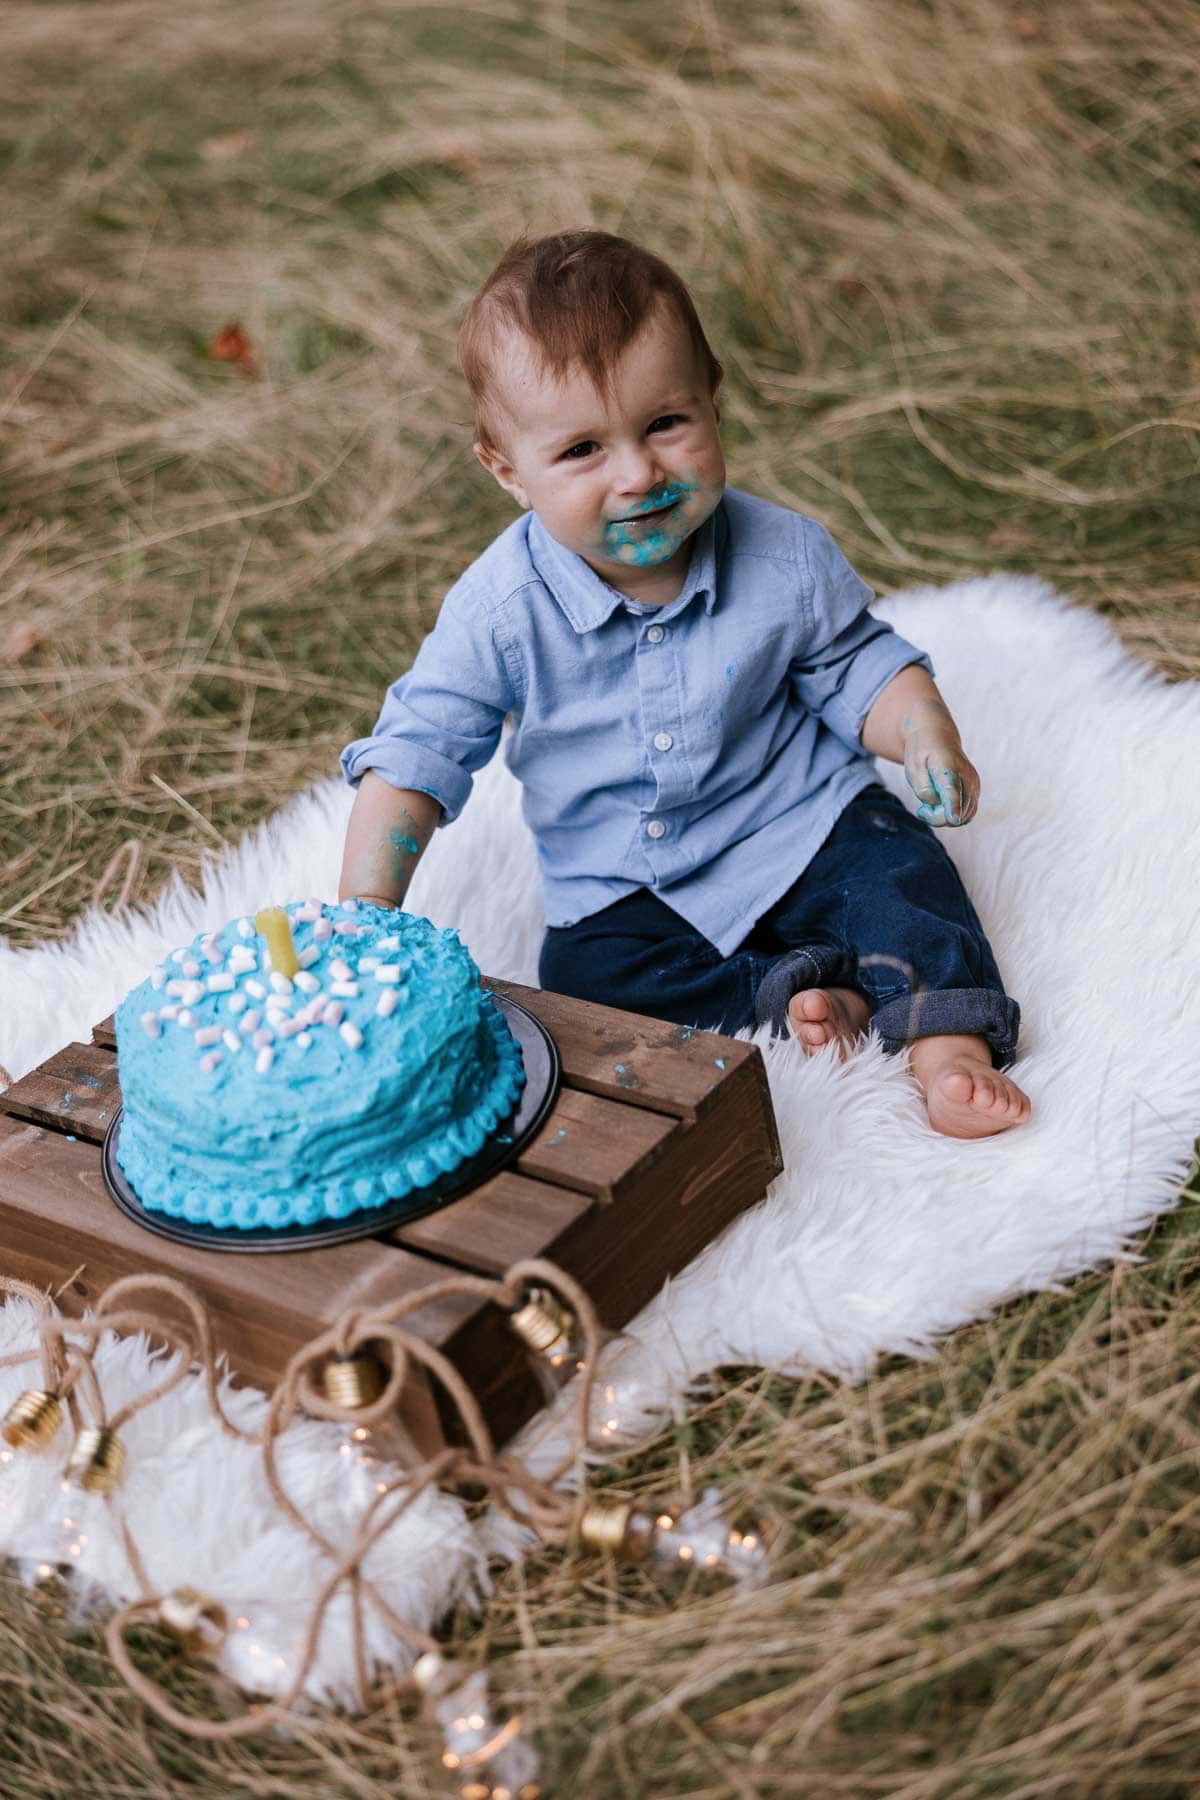 kleiner junge hat einen ganz blauverschmierten mund vom torte essen beim cakesmash fotoshoot